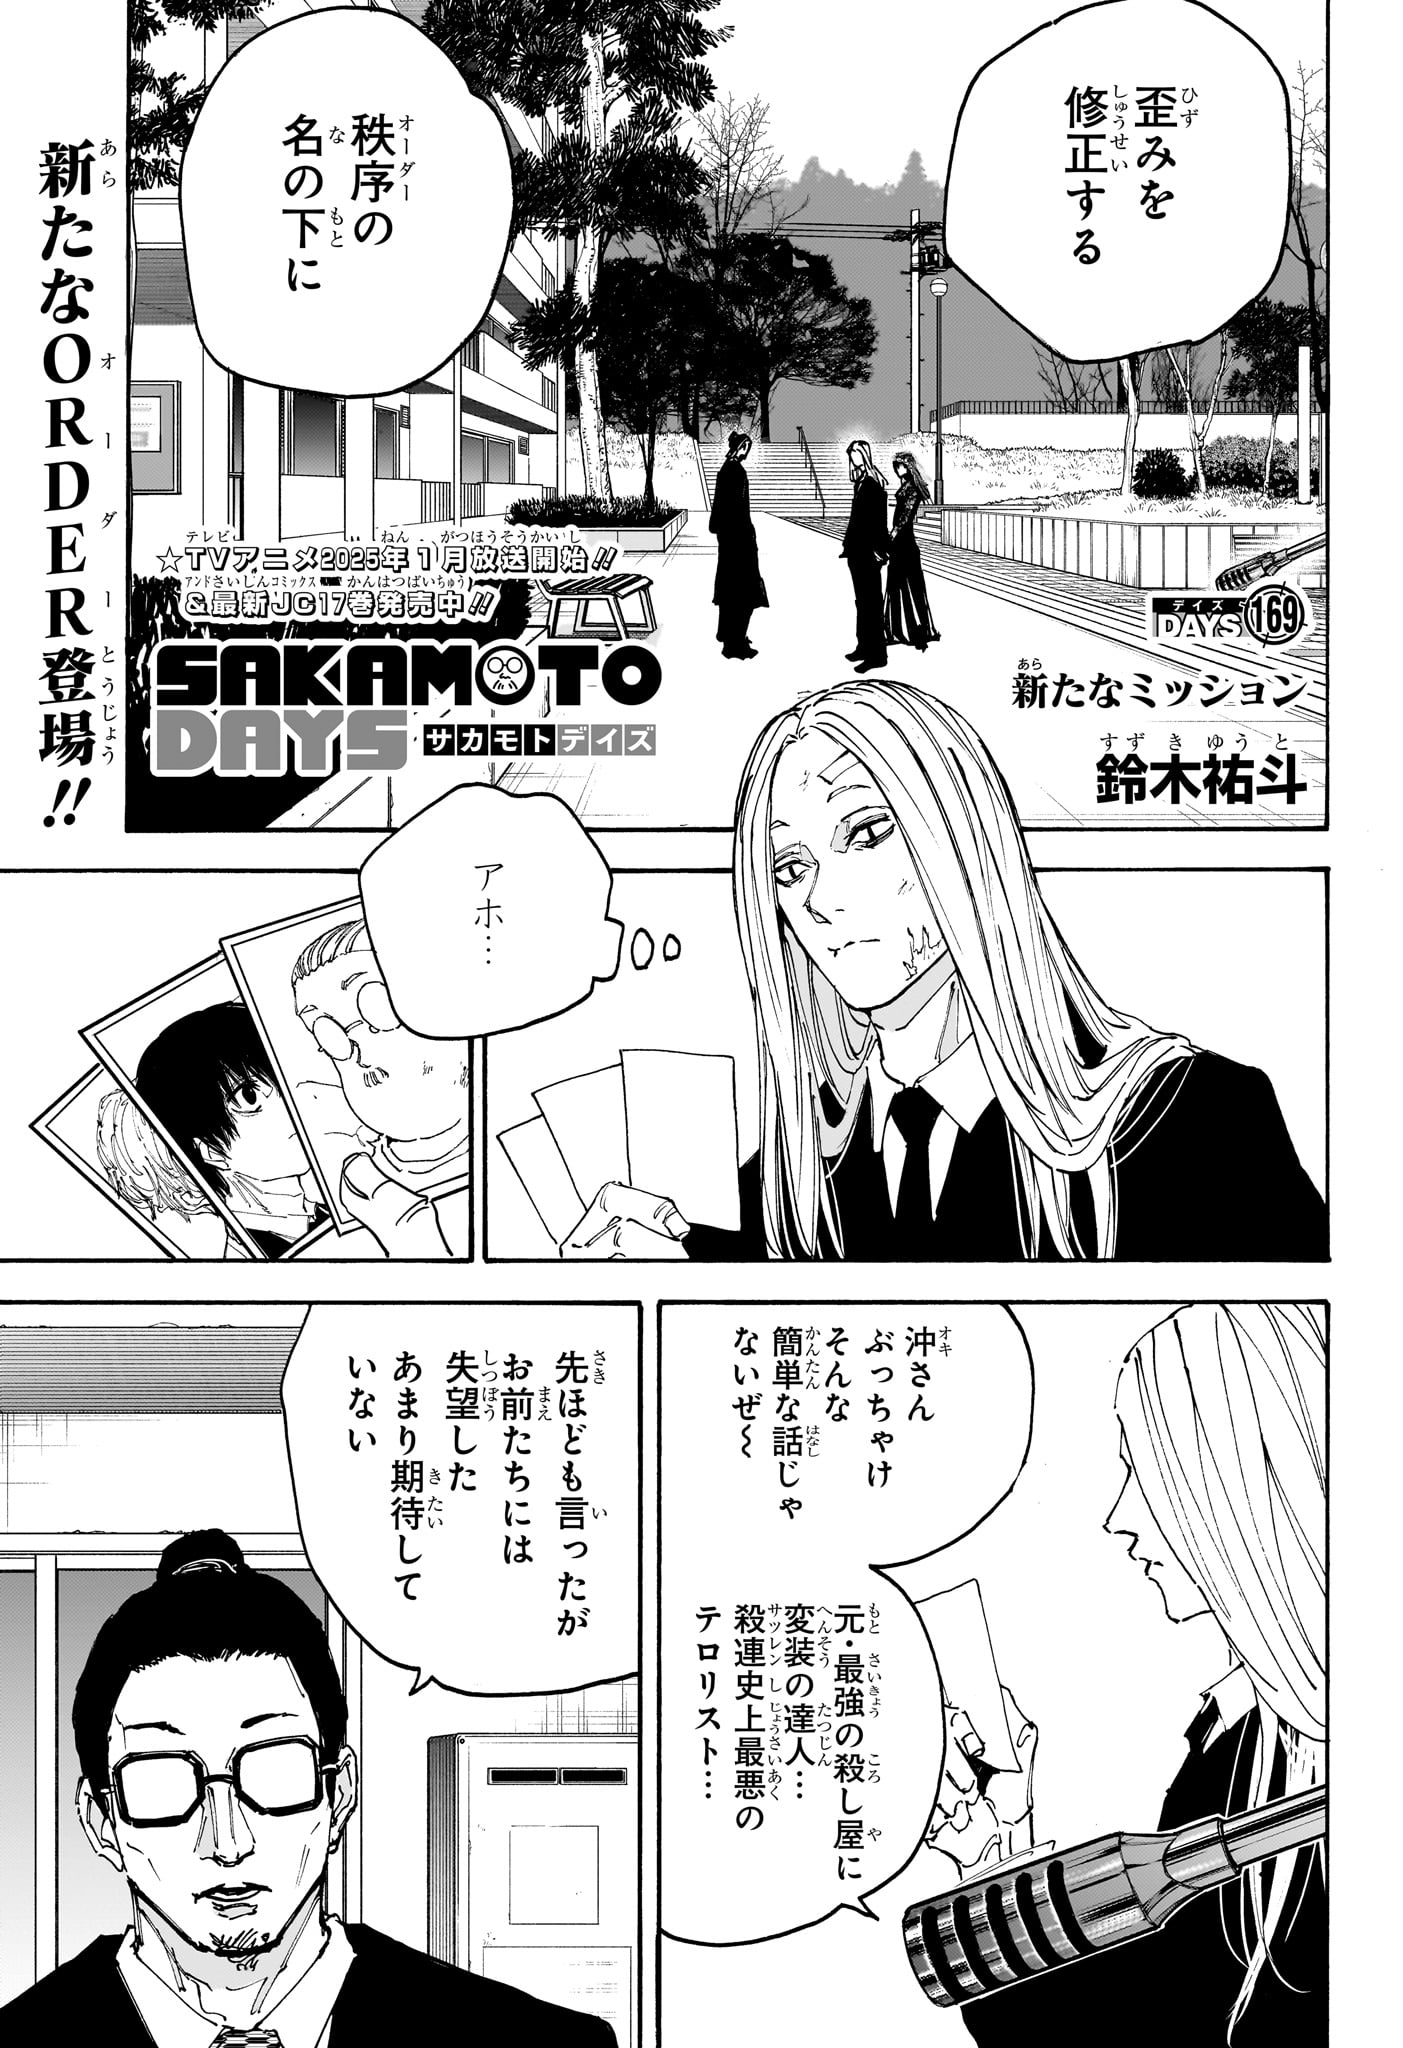 Sakamoto Days - Chapter 169 - Page 1